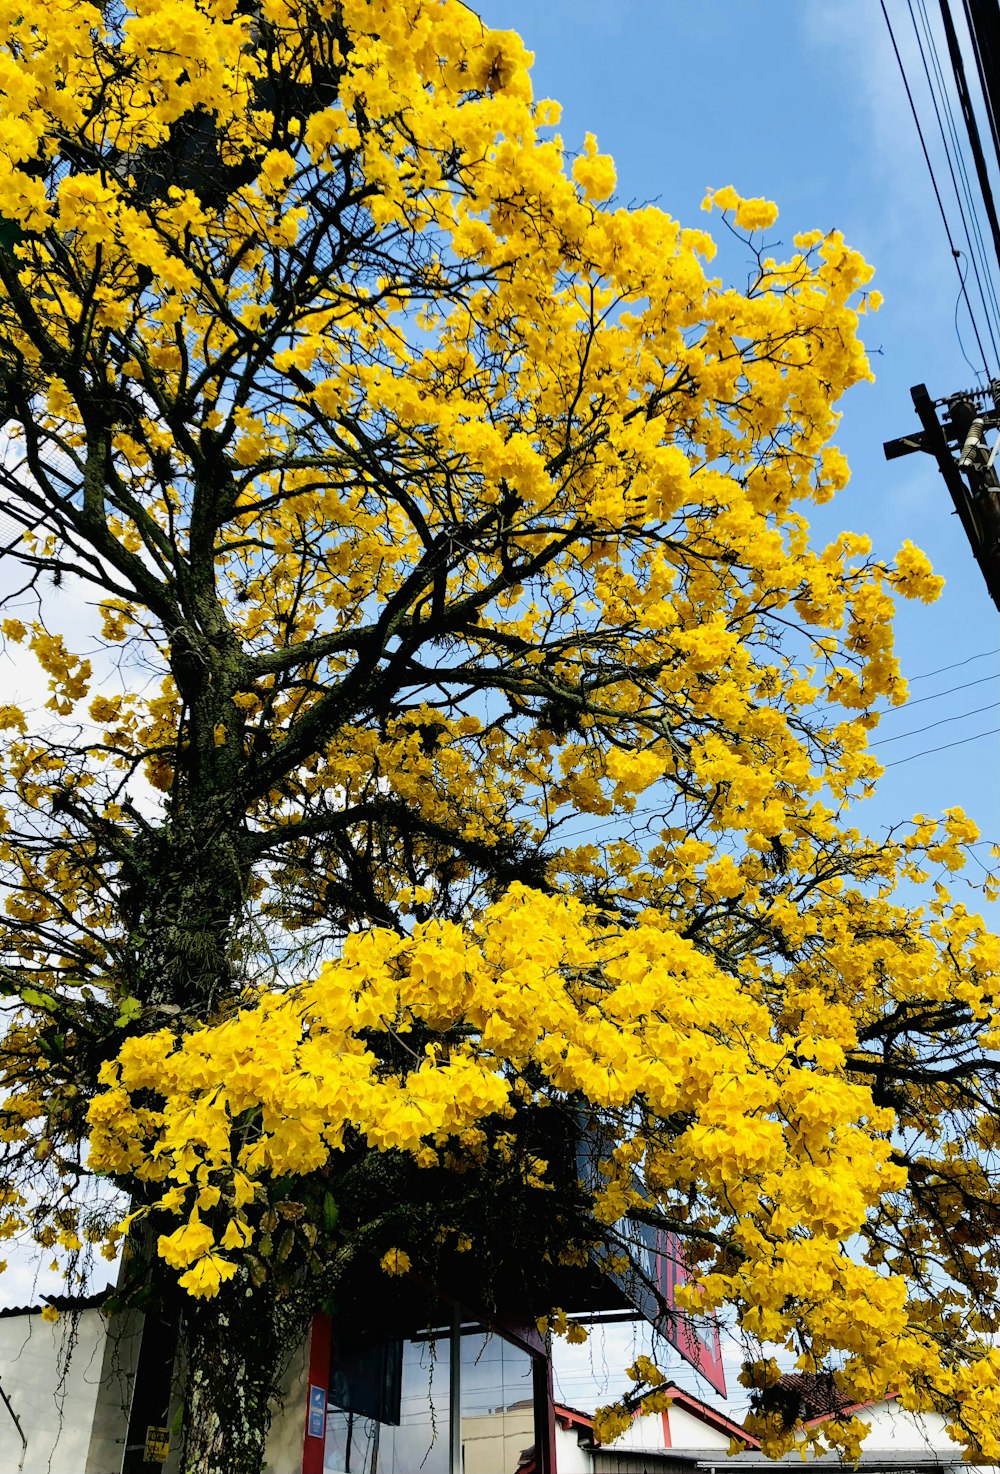 albero a foglia gialla sotto il cielo blu durante il giorno